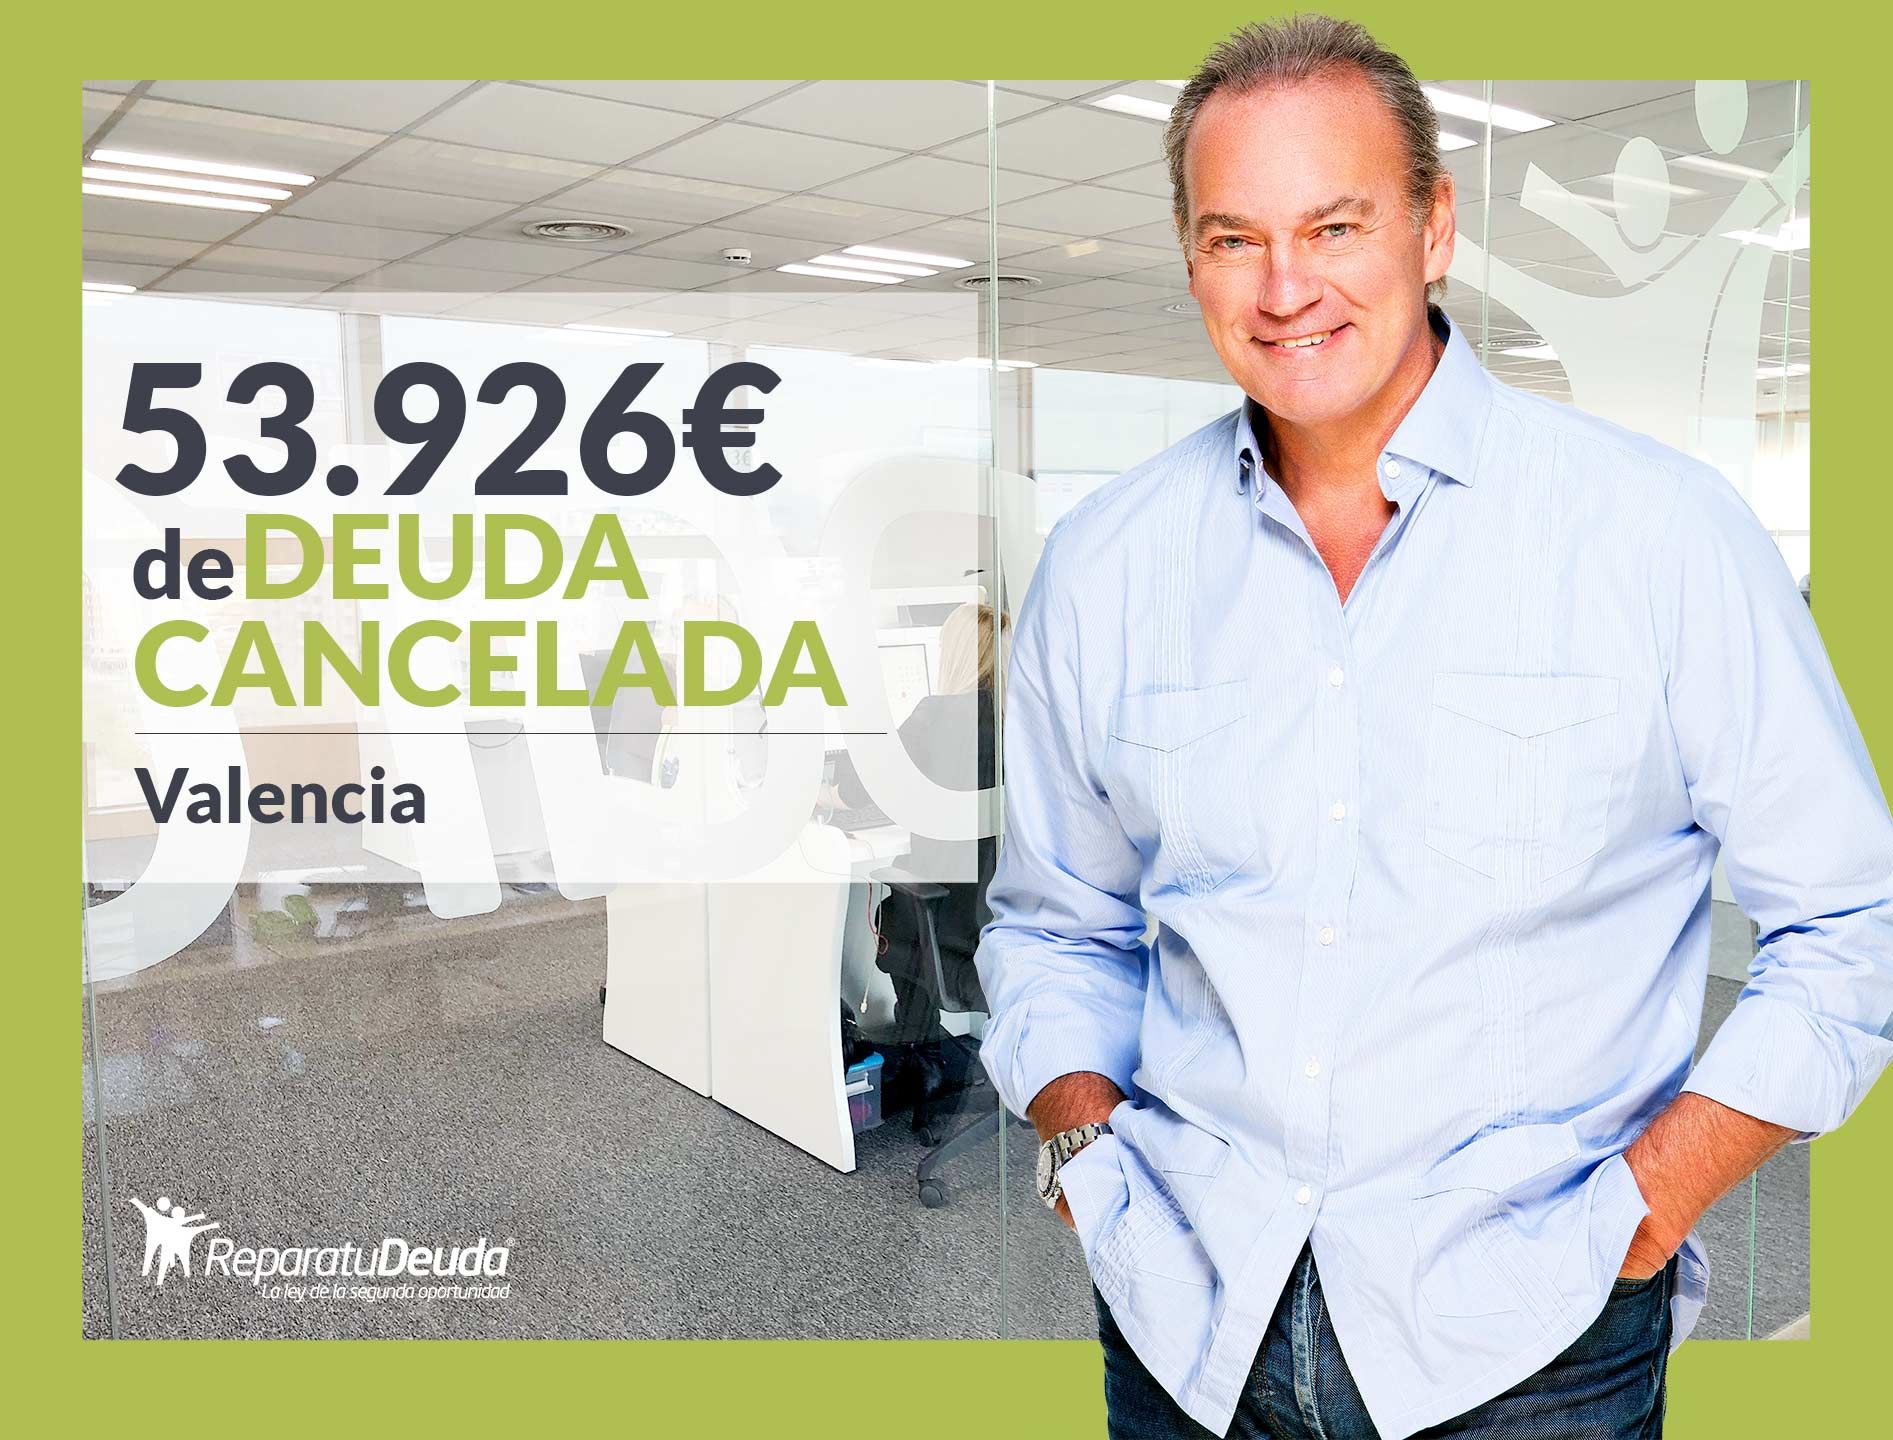 Repara tu Deuda Abogados cancela 53.926? en Valencia con la Ley de Segunda Oportunidad